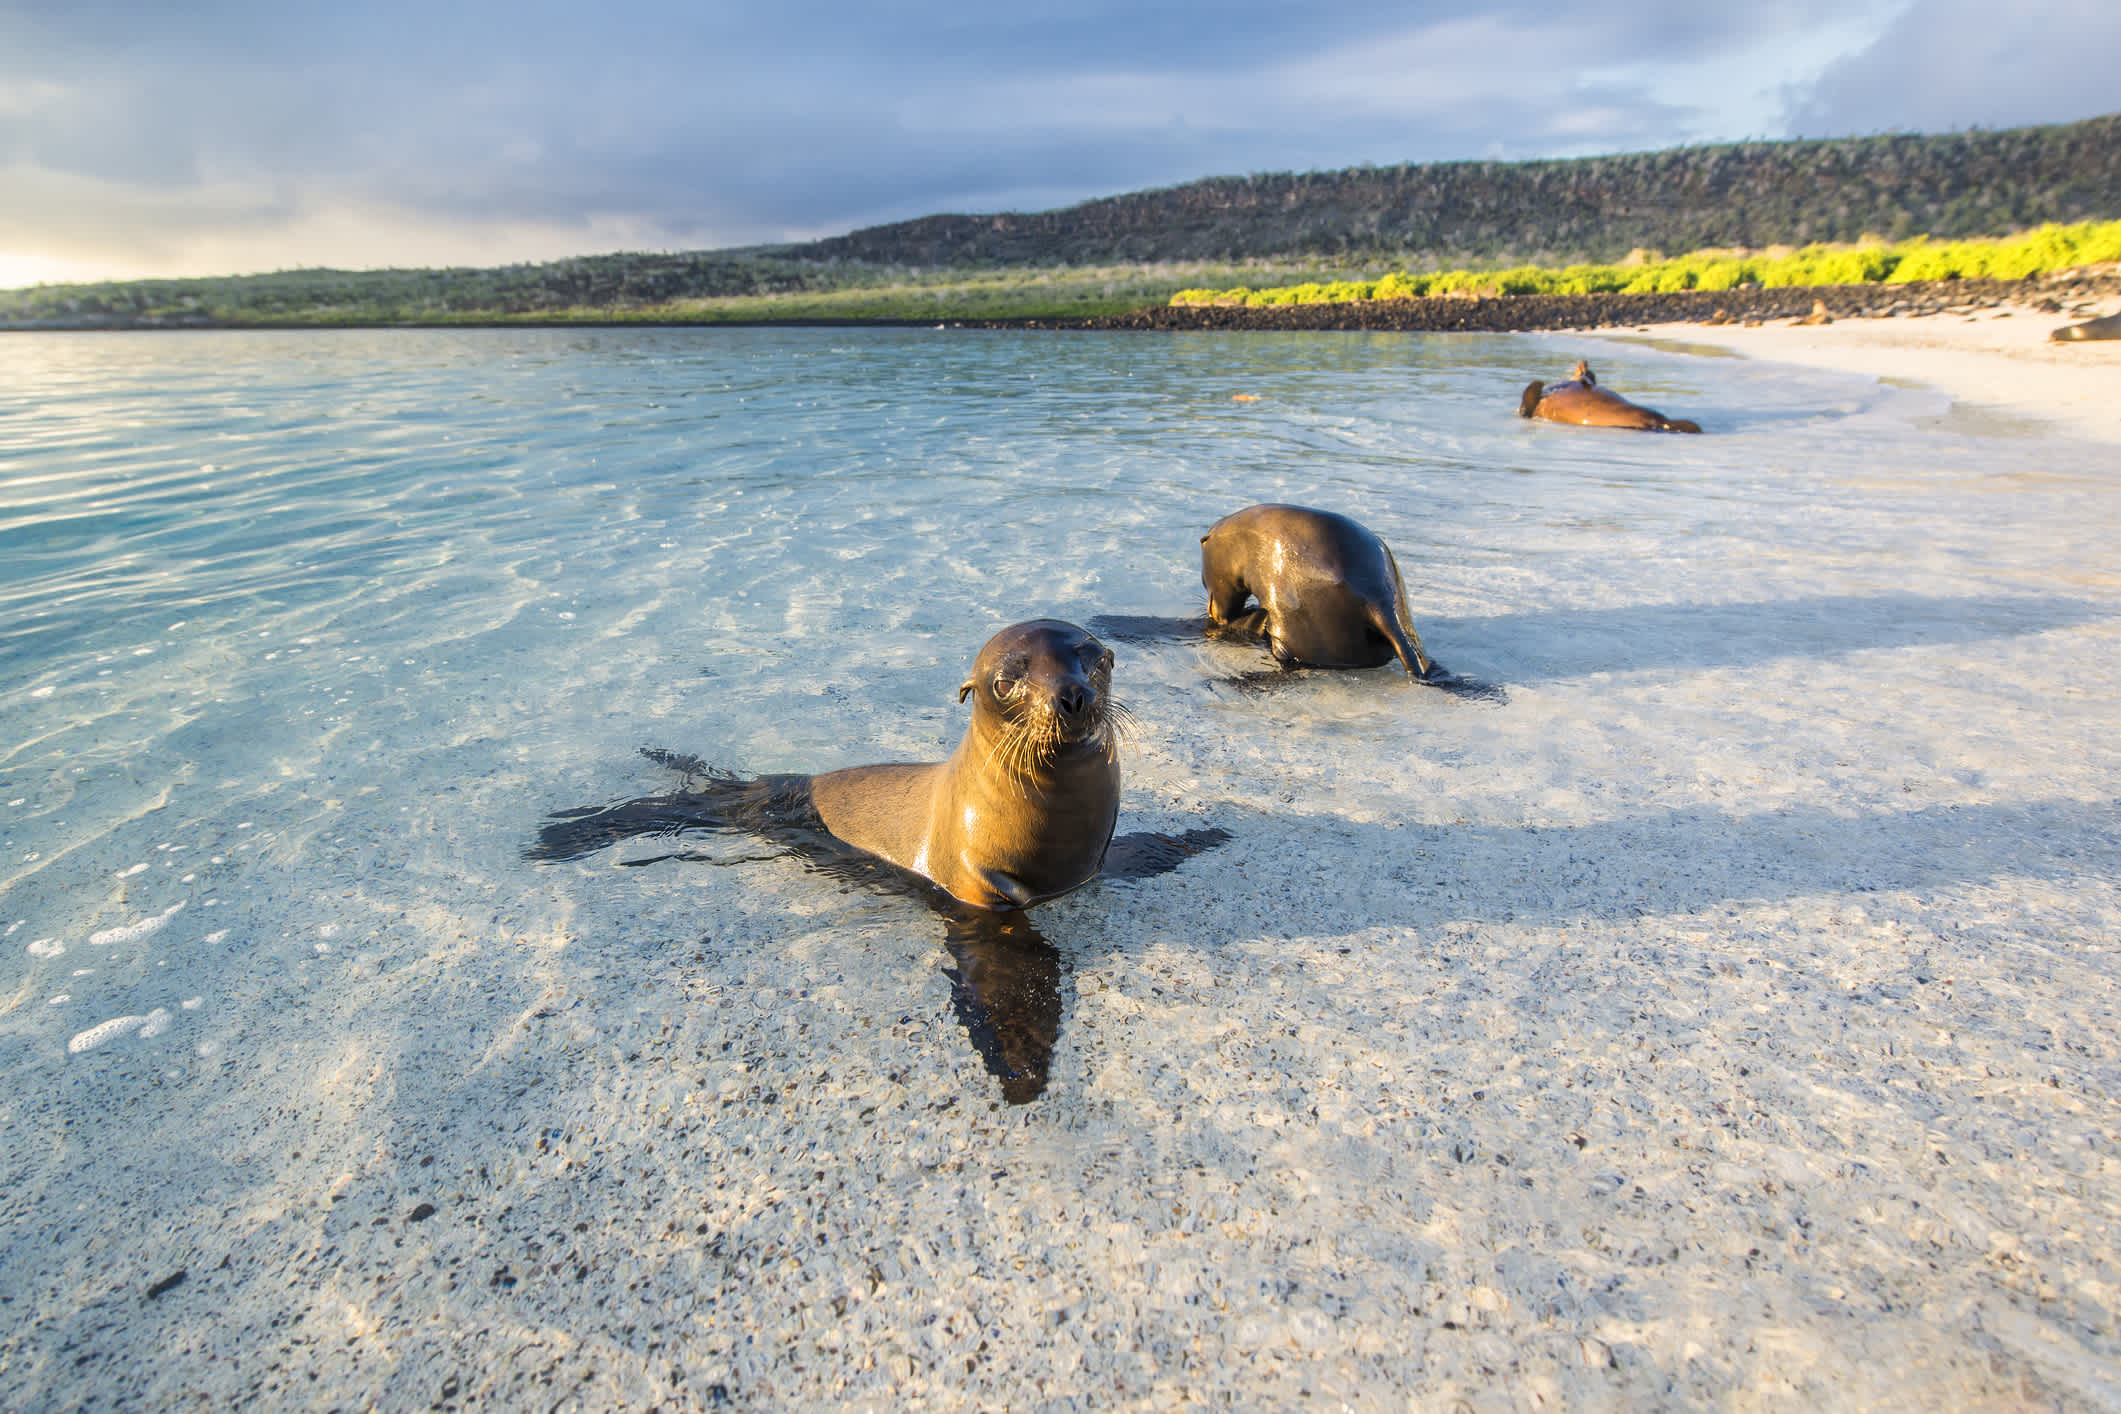 Galapagos-Seelöwen am Strand der Insel Sante Fe, Galapagos-Inseln im Pazifischen Ozean. 